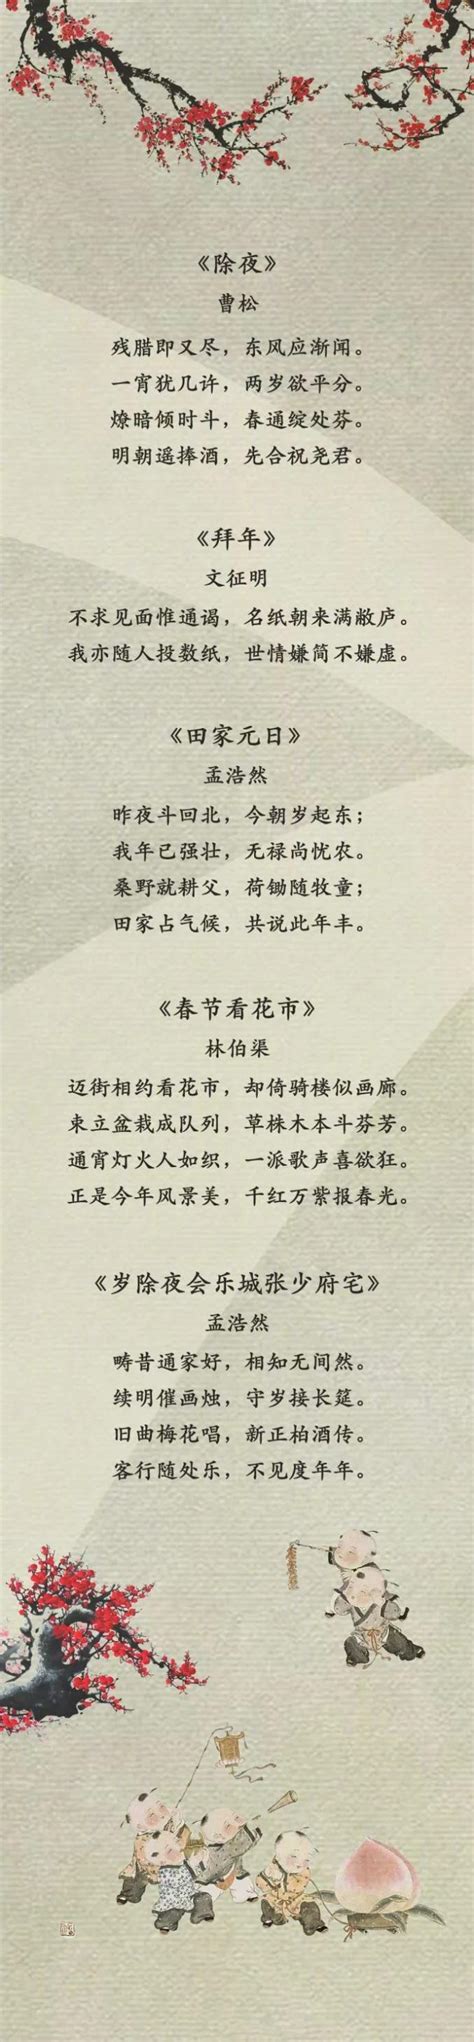 关于春节的短诗歌